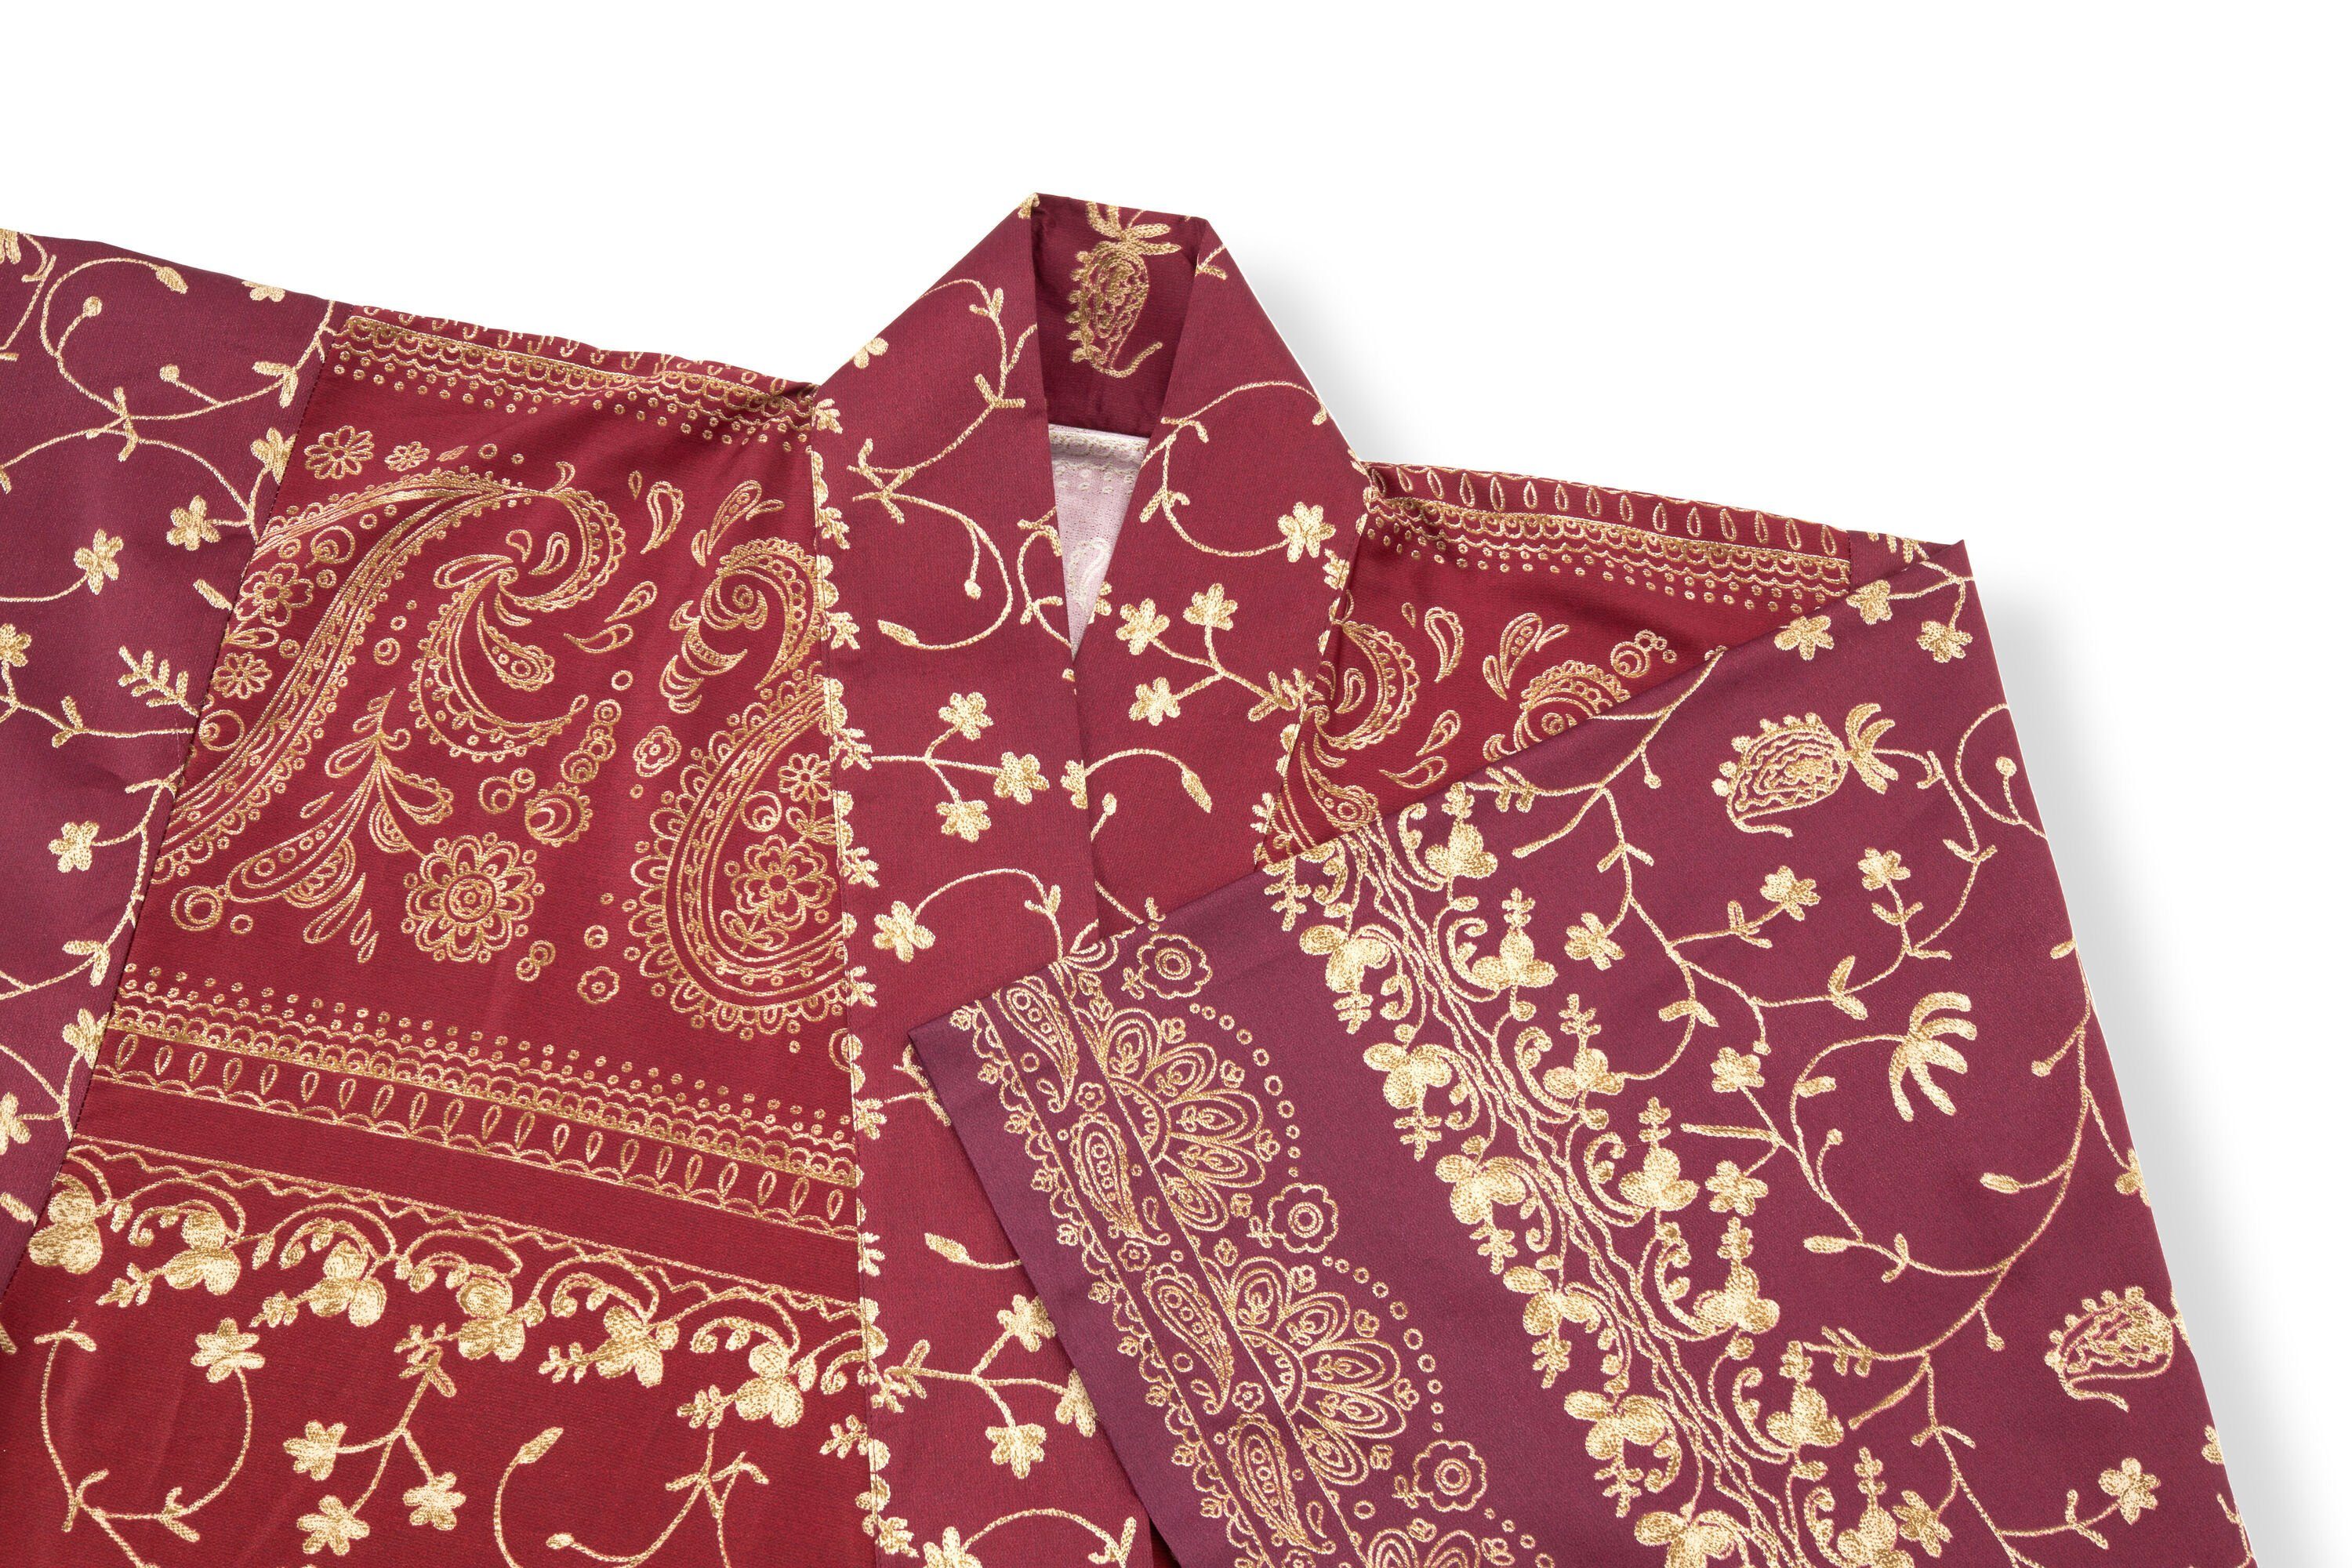 Gürtel, Muster, mit BRENTA, modernem Baumwolle, Kimono Bassetti Baumwolle RUBINROT satinierter knieumspielend, aus